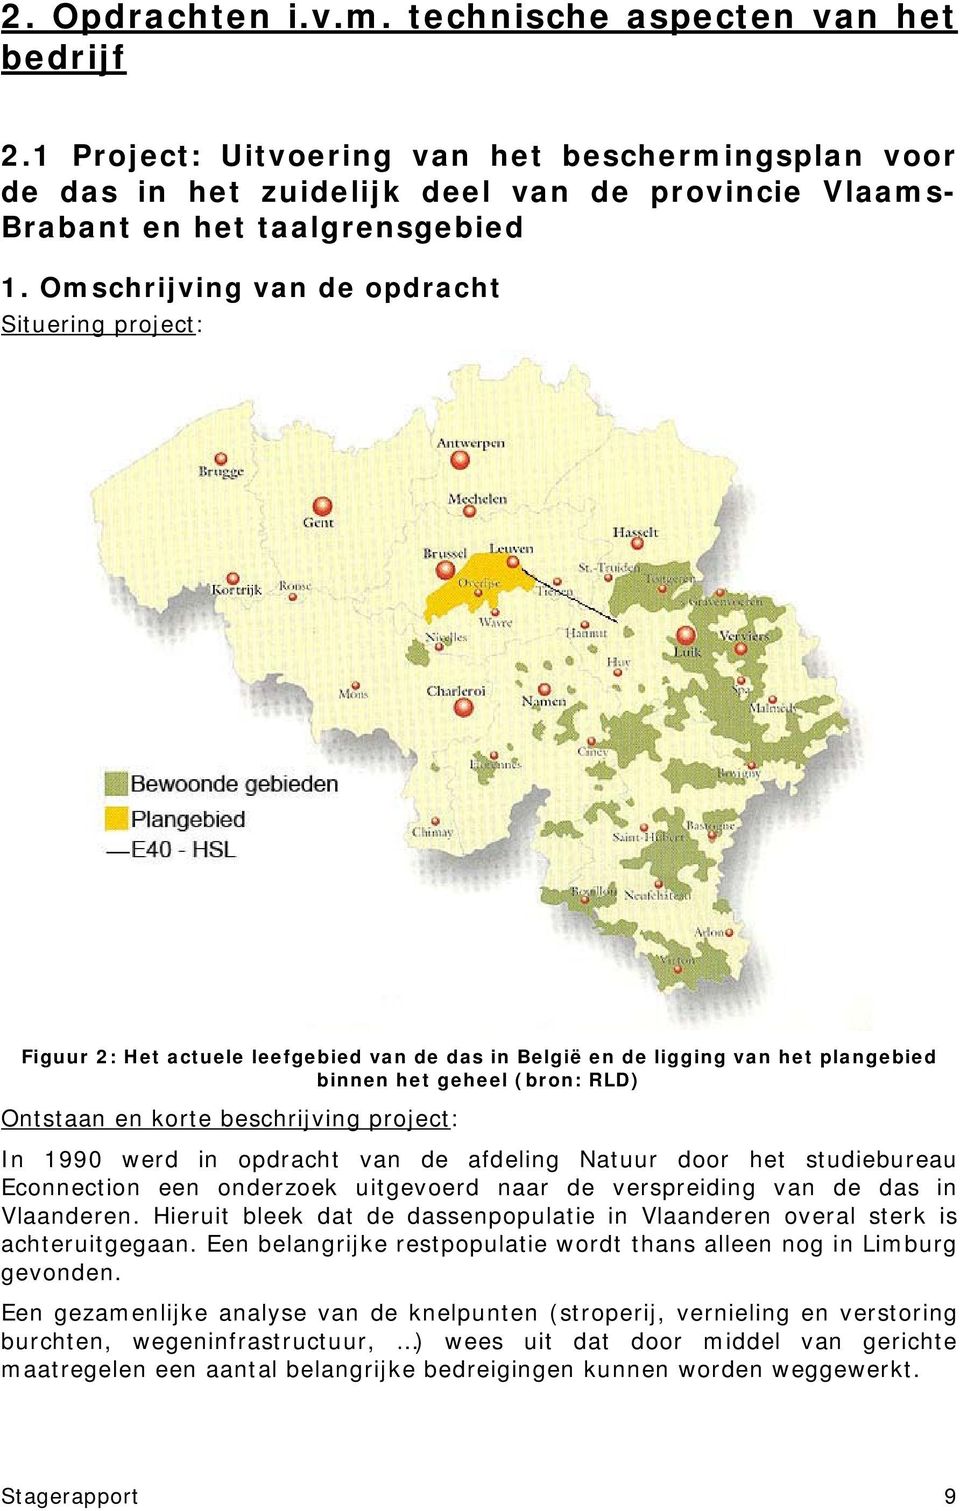 project: In 1990 werd in opdracht van de afdeling Natuur door het studiebureau Econnection een onderzoek uitgevoerd naar de verspreiding van de das in Vlaanderen.